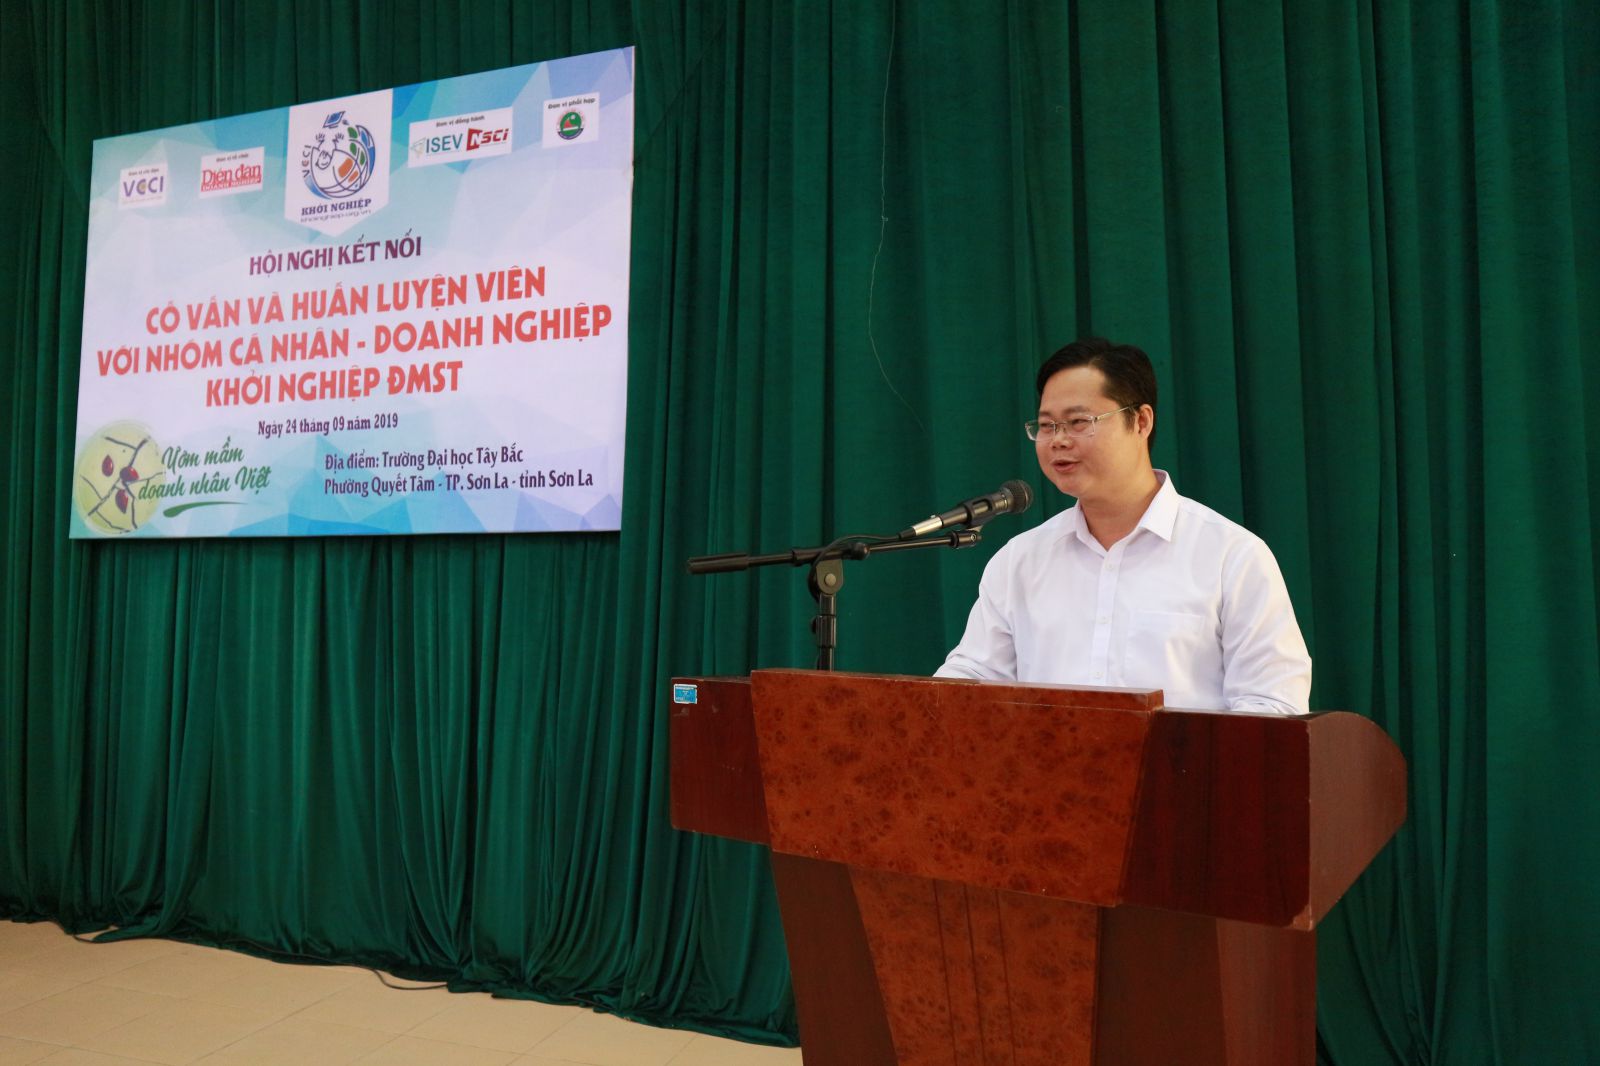 Đây là nhận định của Ông Hoàng Chí Thức - Chủ tịch Hiệp hội Doanh nghiệp tỉnh Sơn La tại Hội nghị kết nối khởi nghiệp Sơn La vừa qua.